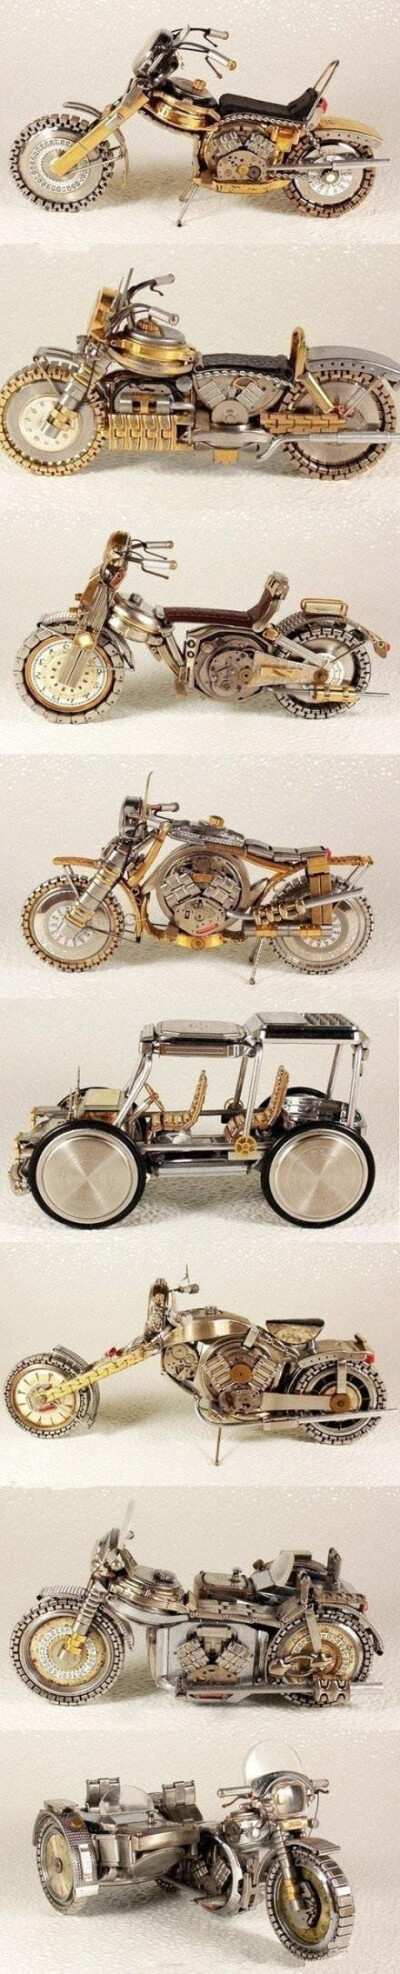 旧手表做出的摩托车模型，相当精致啊